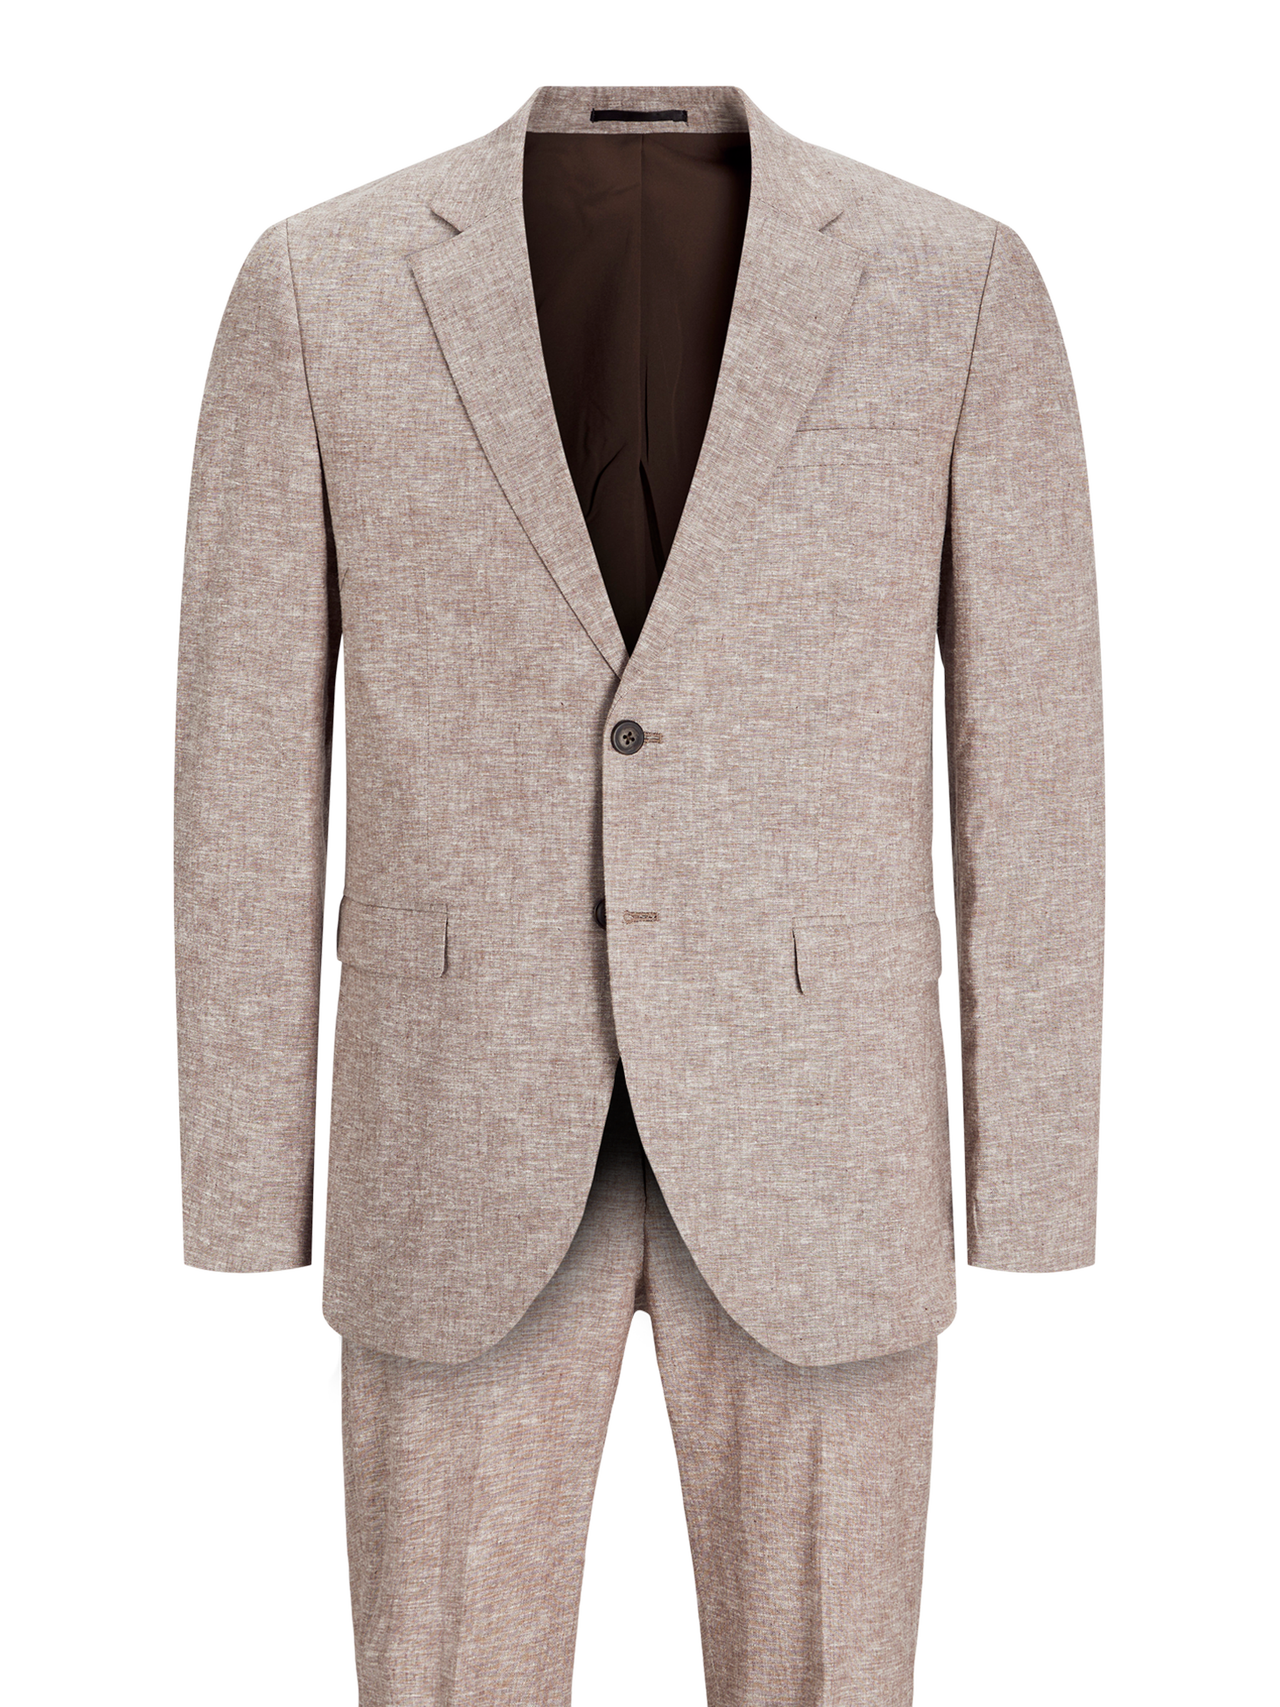 Jack & Jones JPRRIVIERA Slim Fit Suit -Coffee Quartz - 12237723